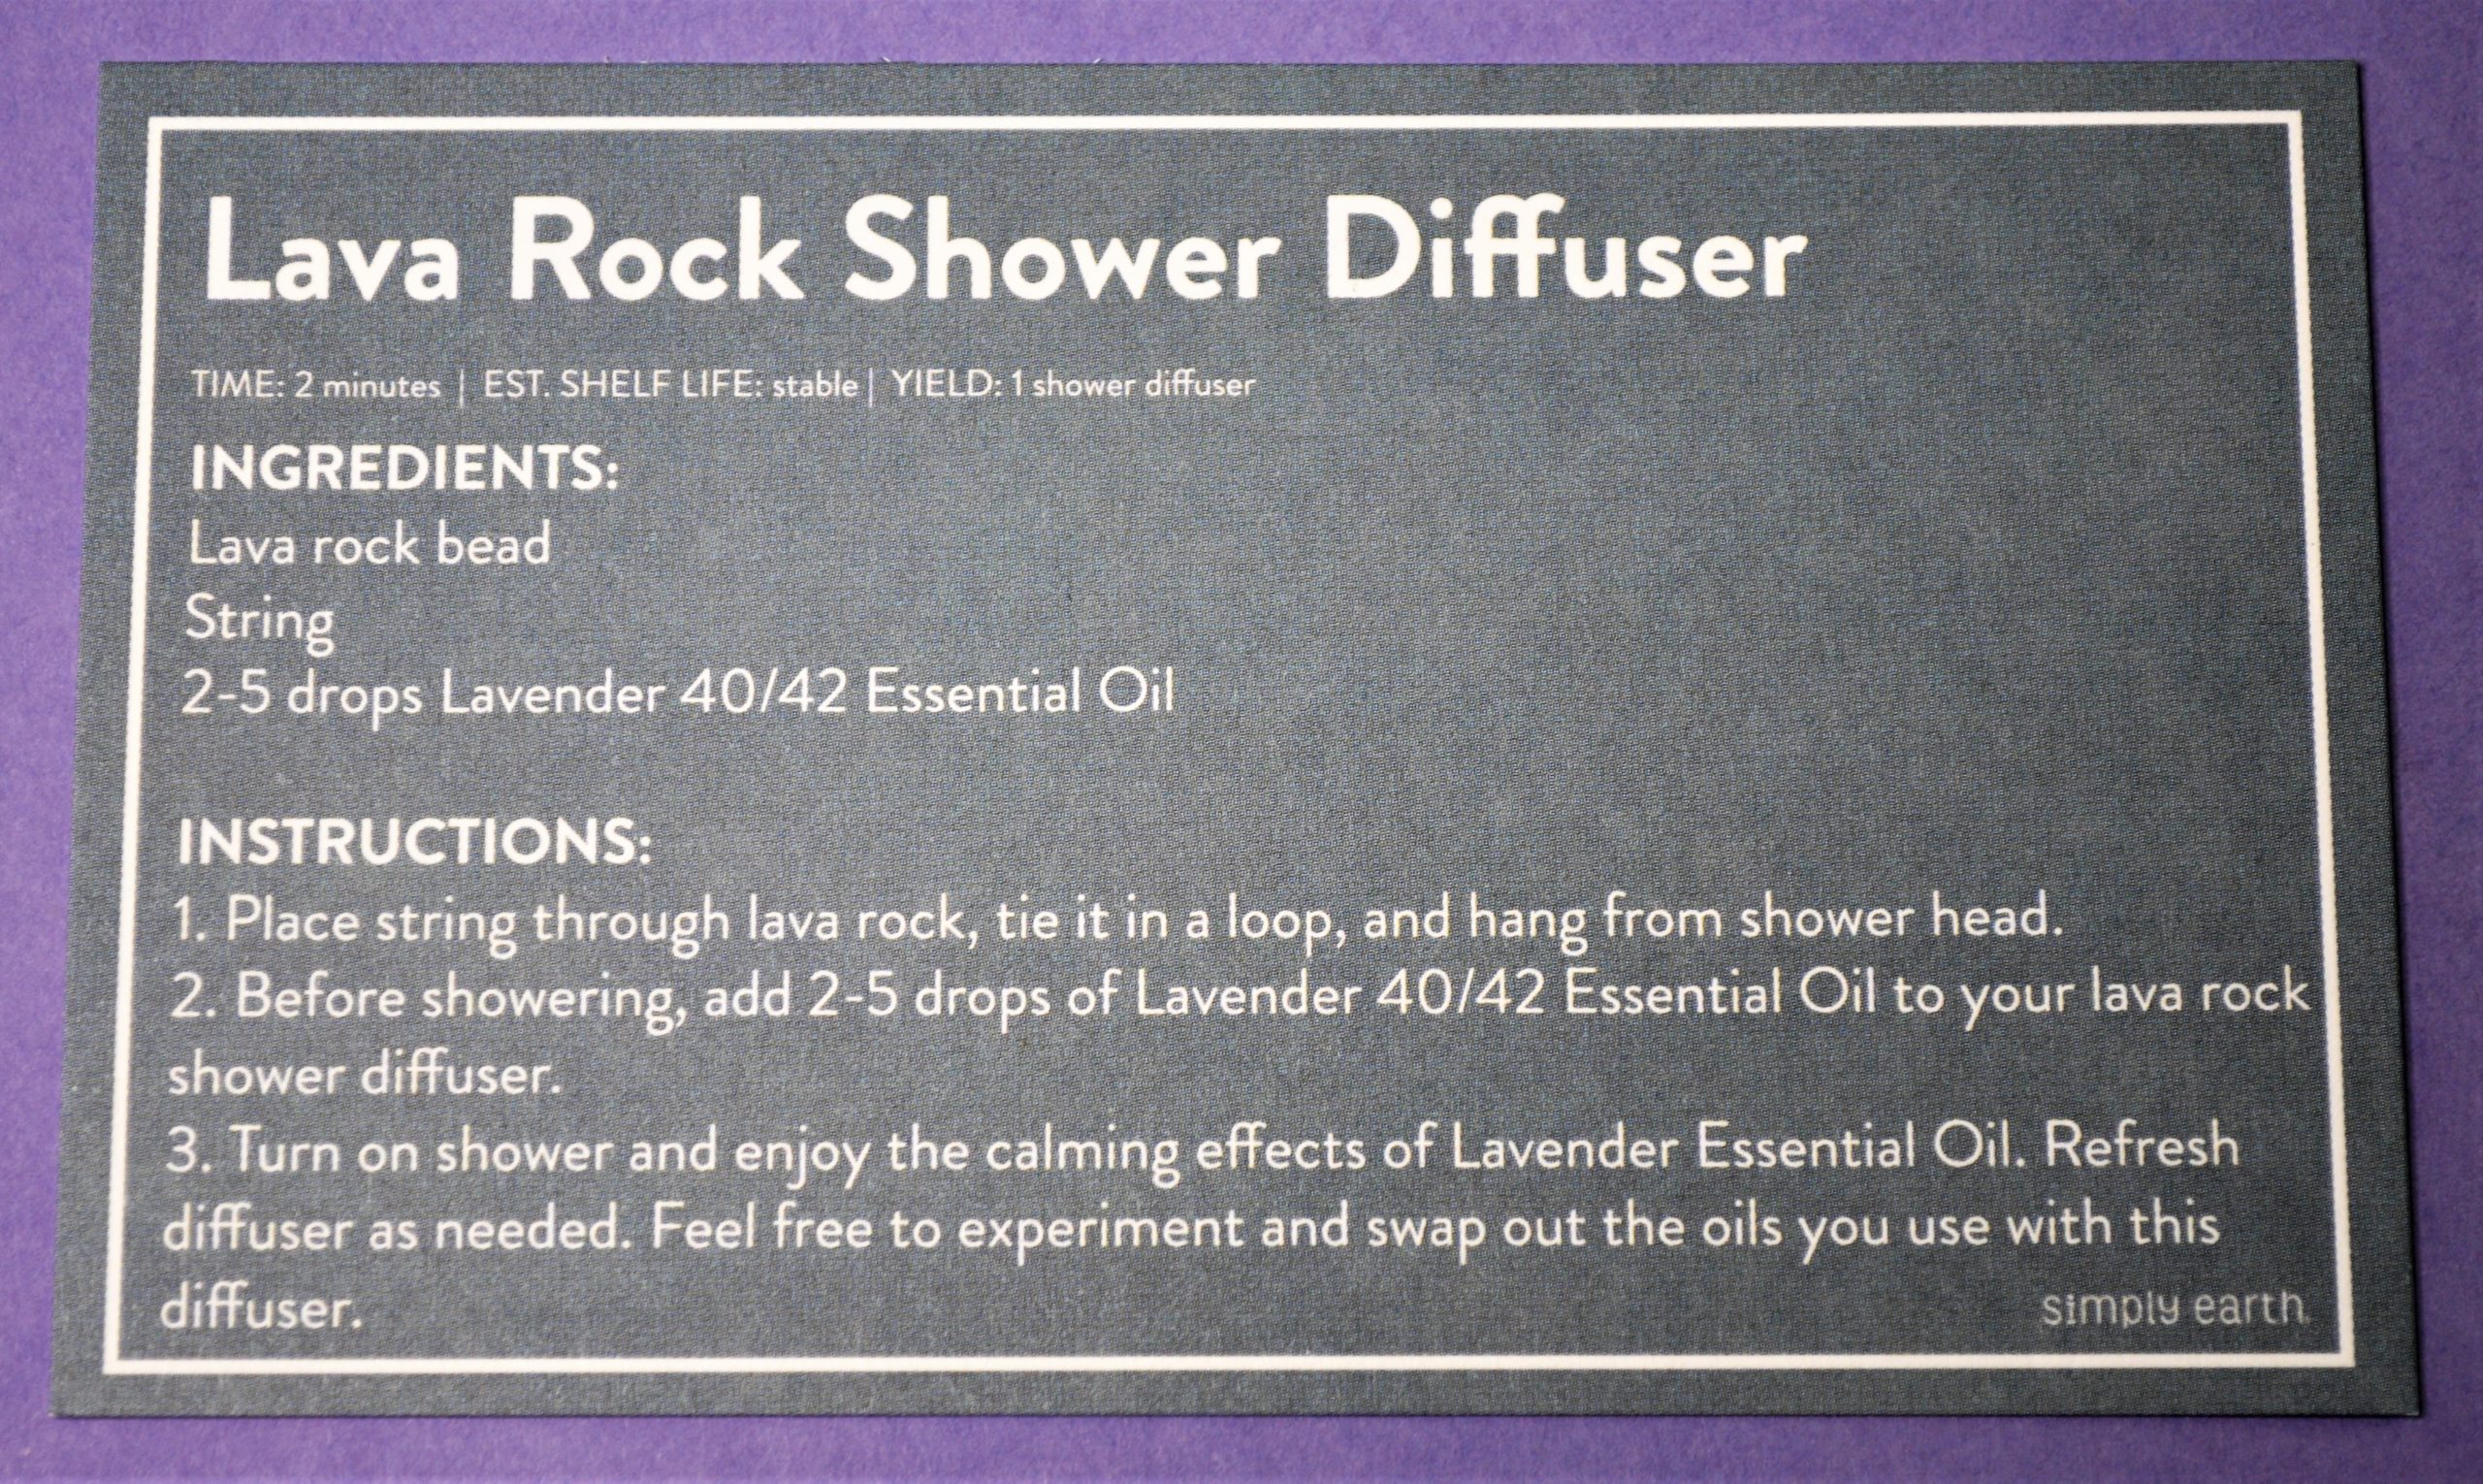 Simply Earth Lava Rock Shower Diffuser Recipe Card